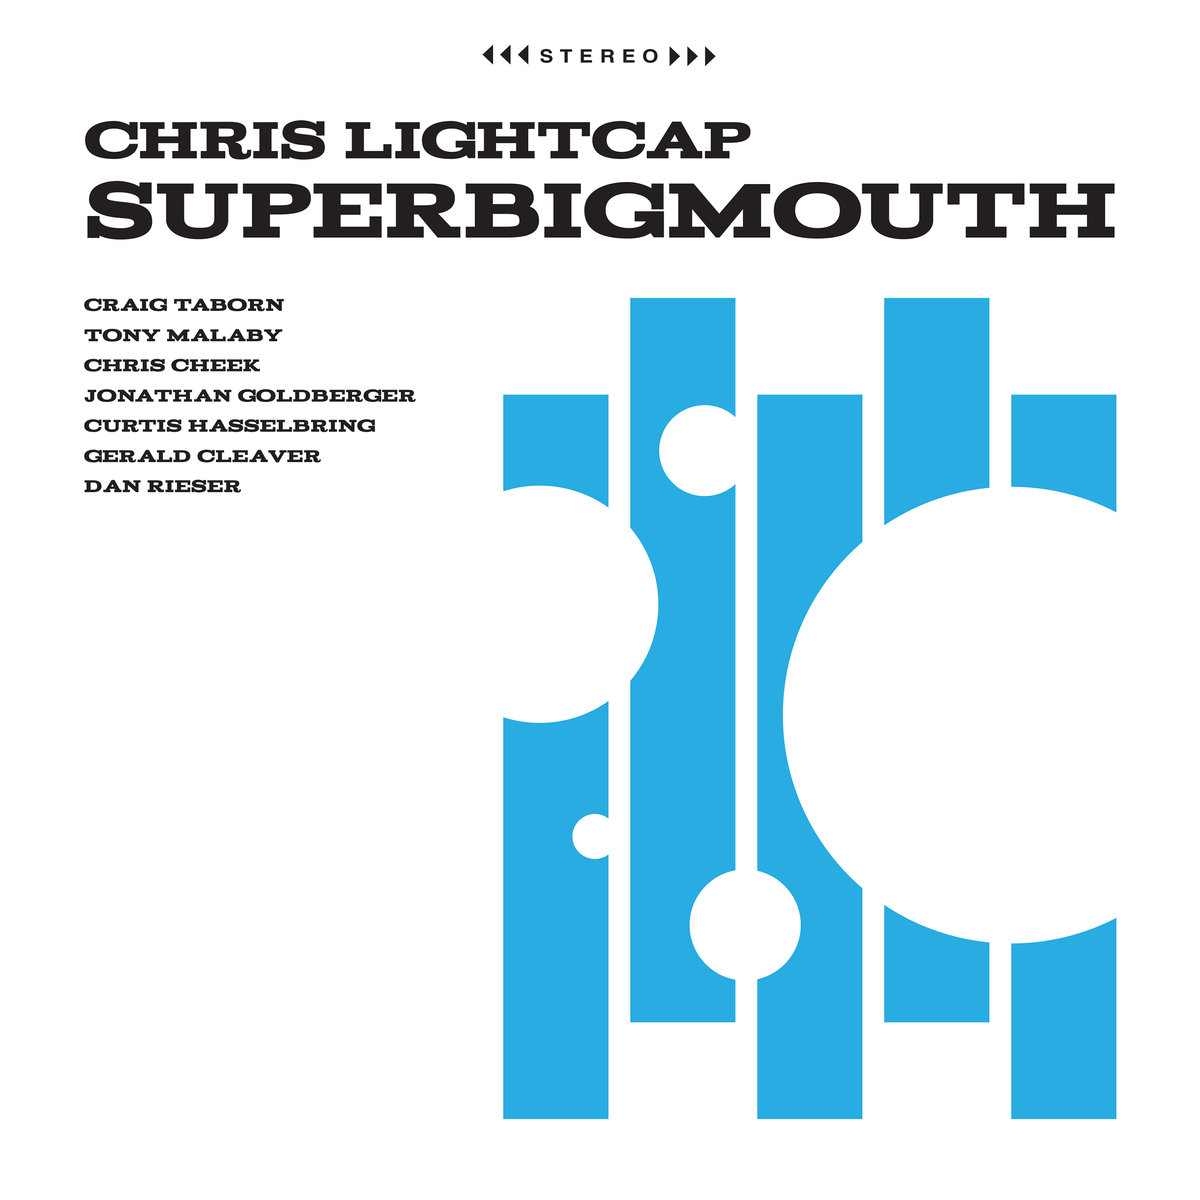 I miglior album jazz 2019 Top 20 dischi - Chris Lightcap